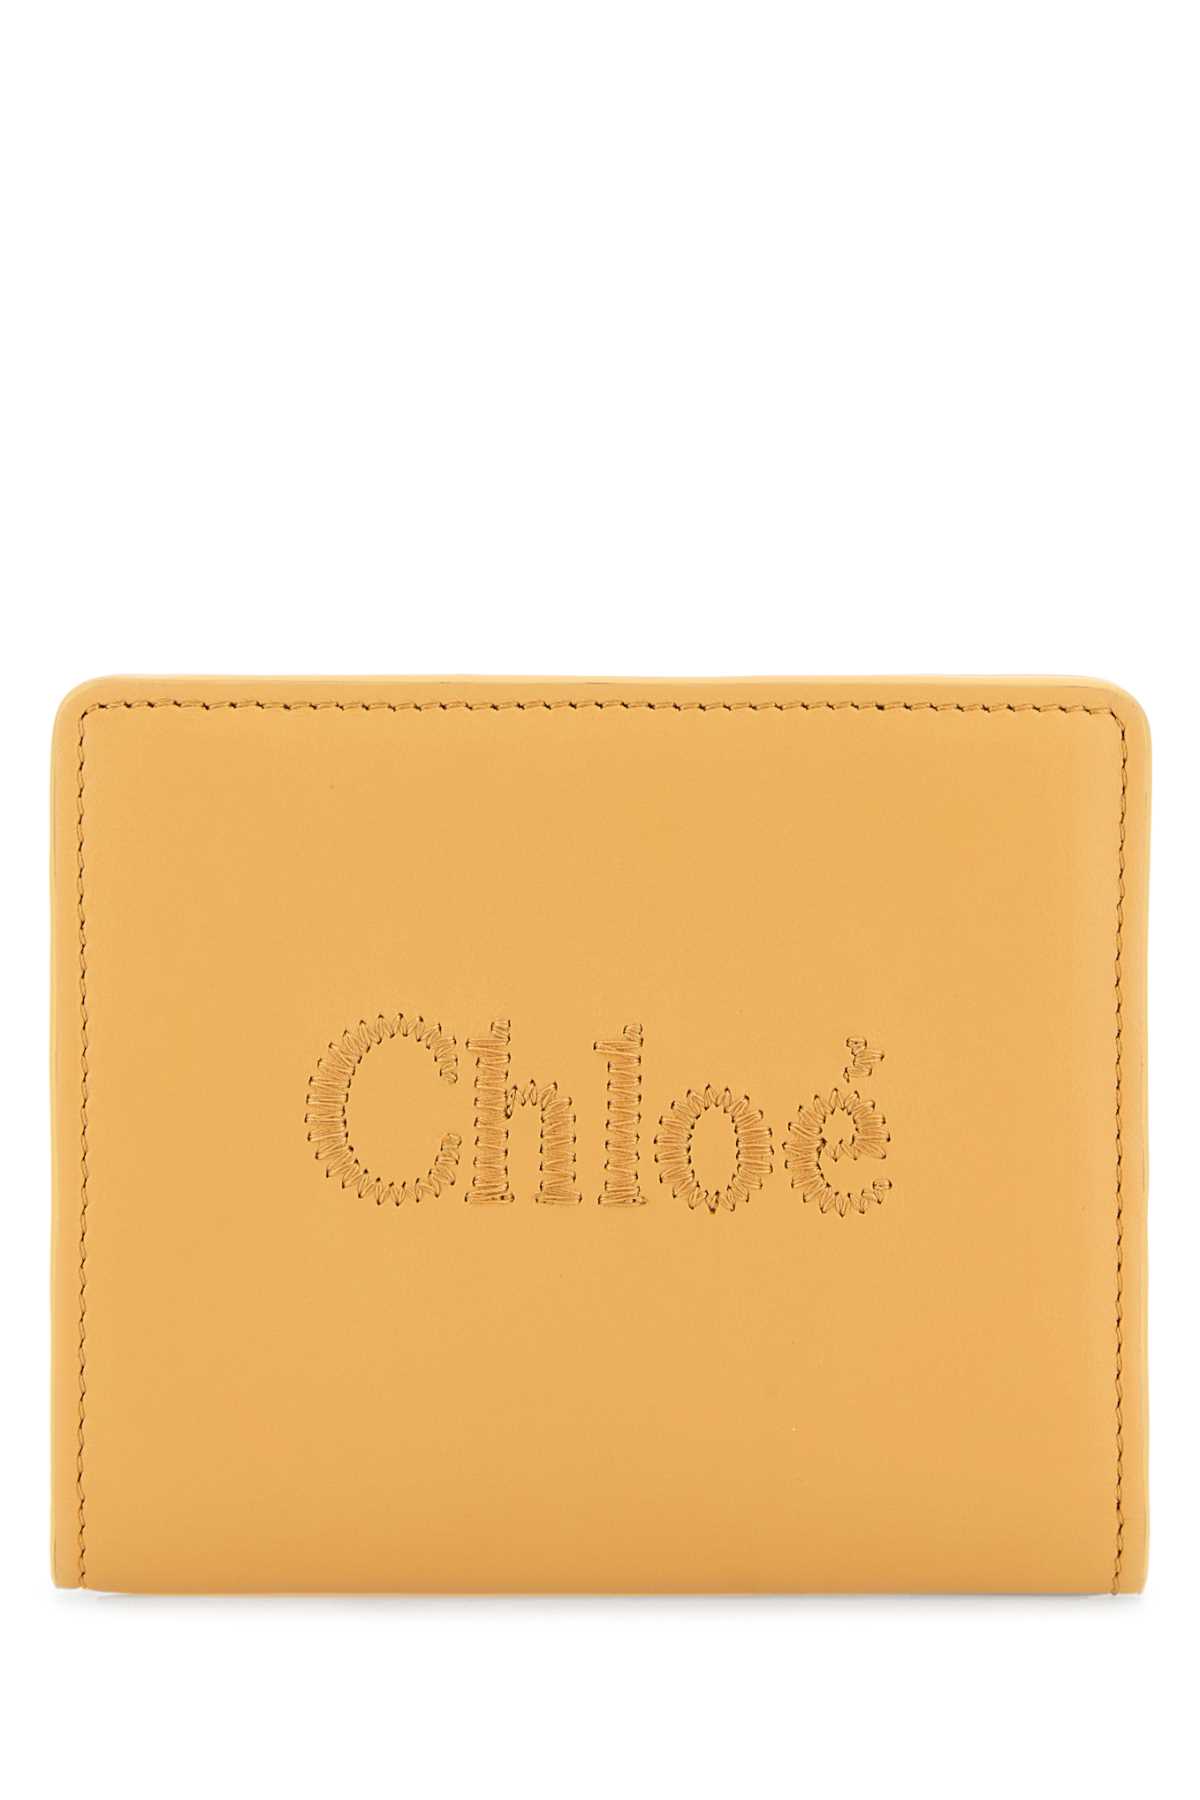 Chloé Peach Leather Wallet